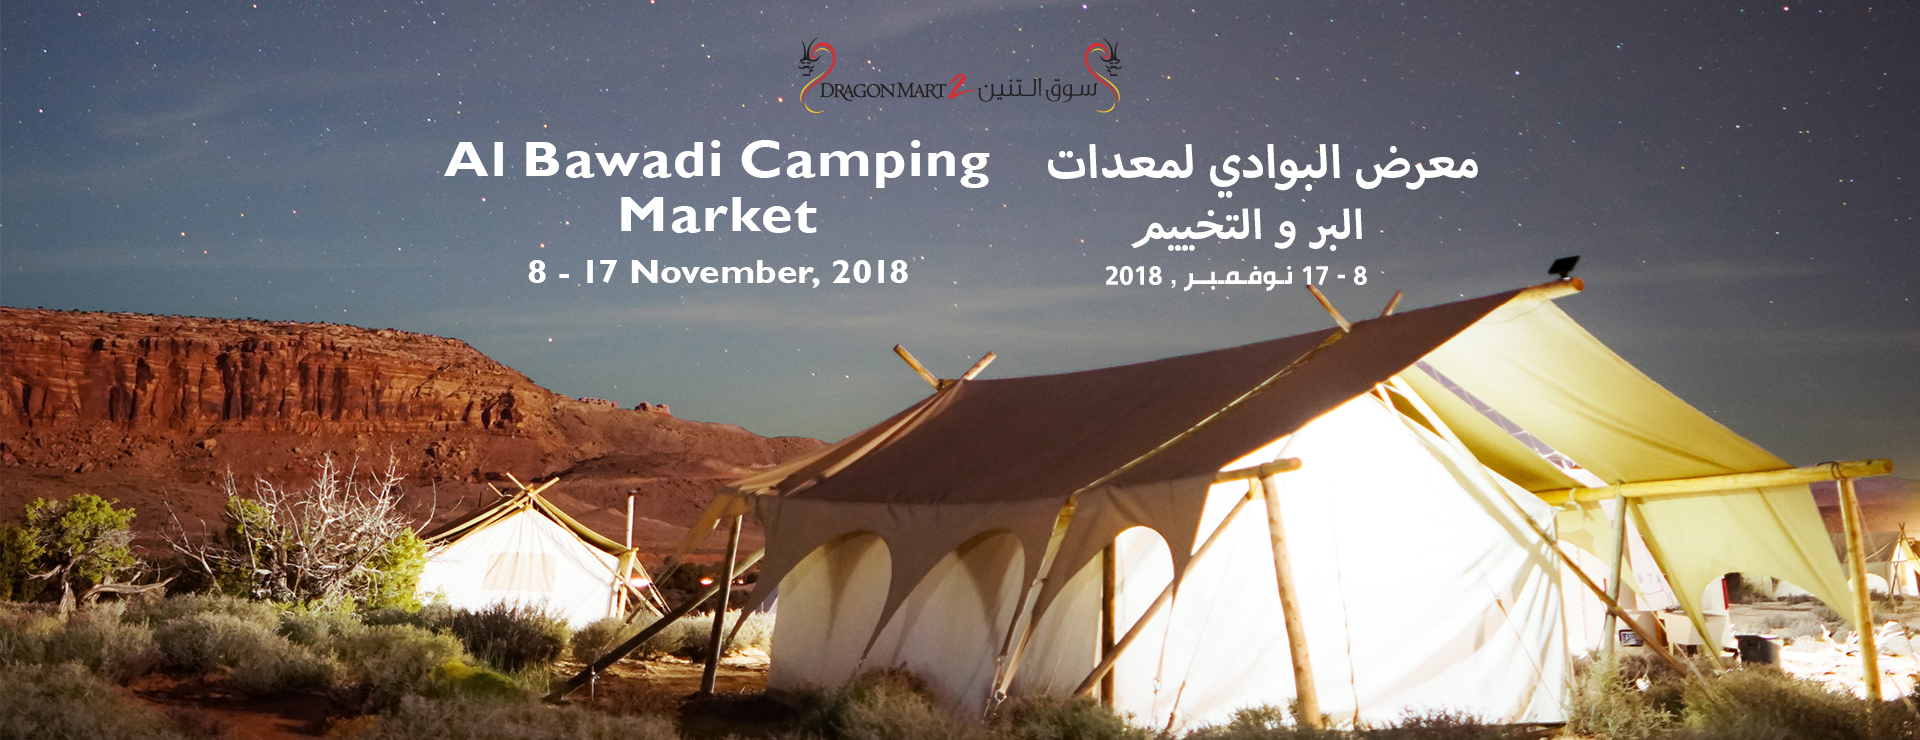 Al Bawadi Camping Market - Dragon Mart